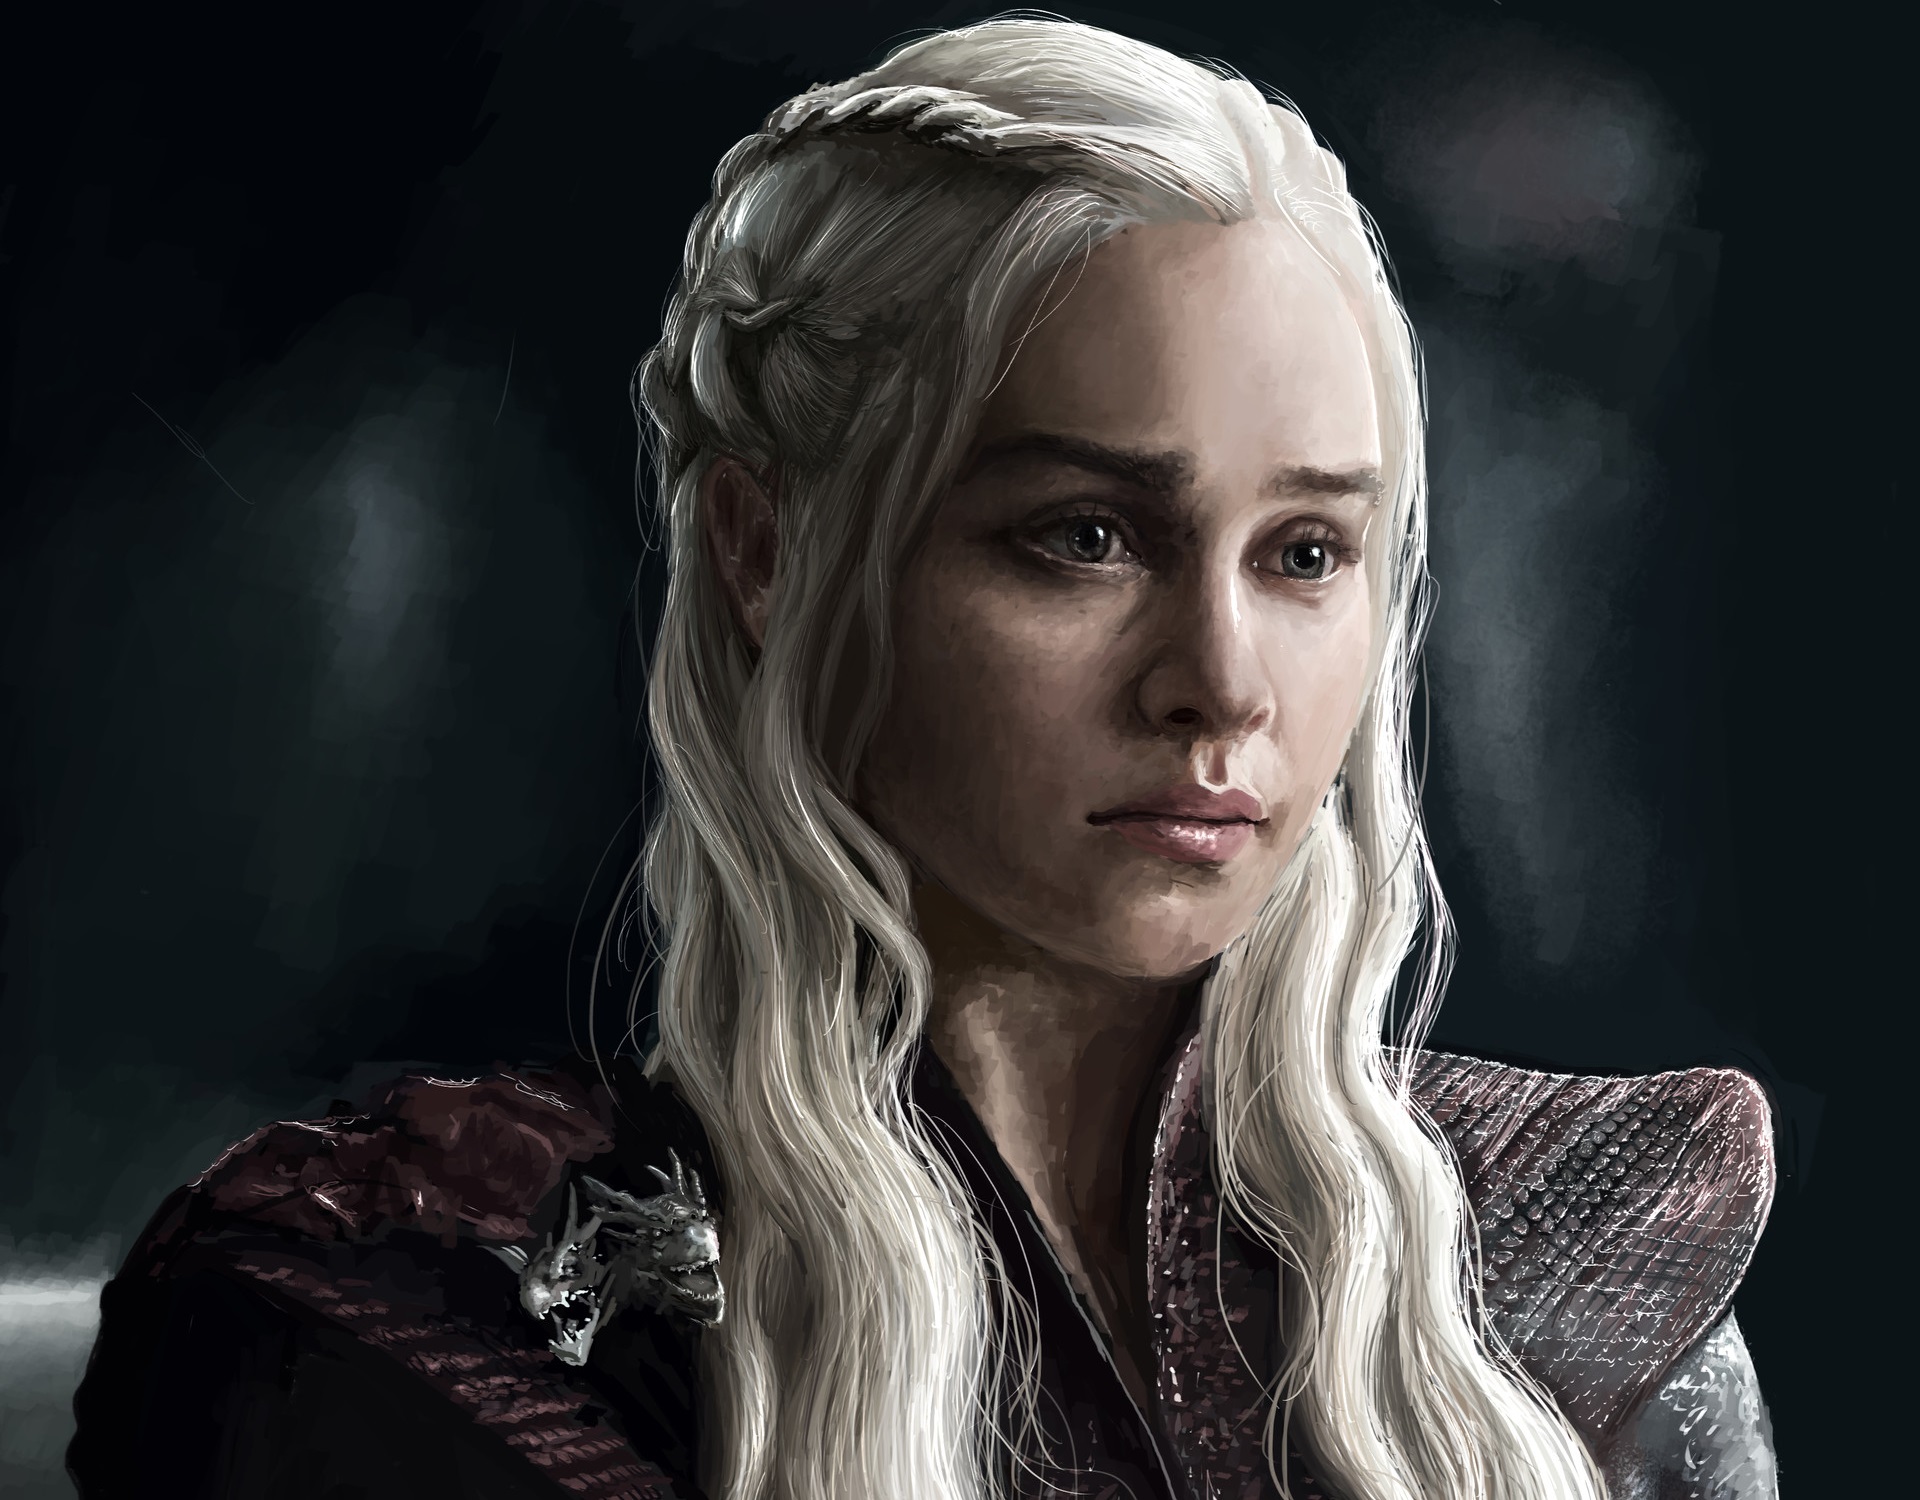 Download mobile wallpaper Game Of Thrones, Face, Tv Show, White Hair, Daenerys Targaryen, Emilia Clarke for free.